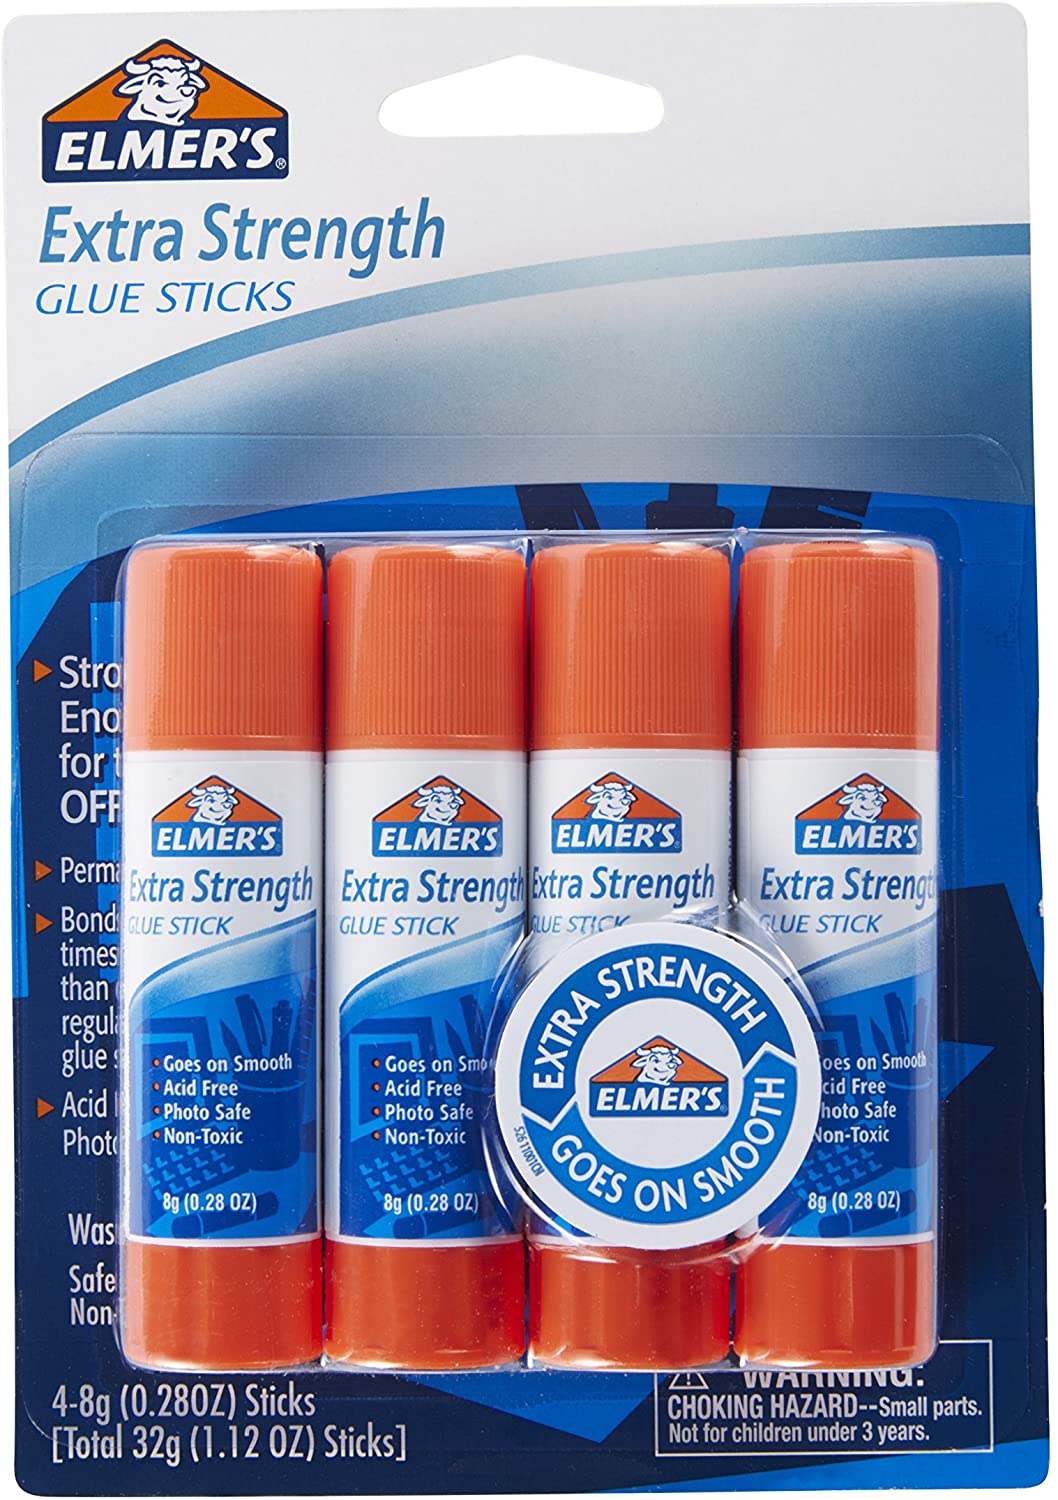 5. Elmer's Extra Strength Glue Sticks